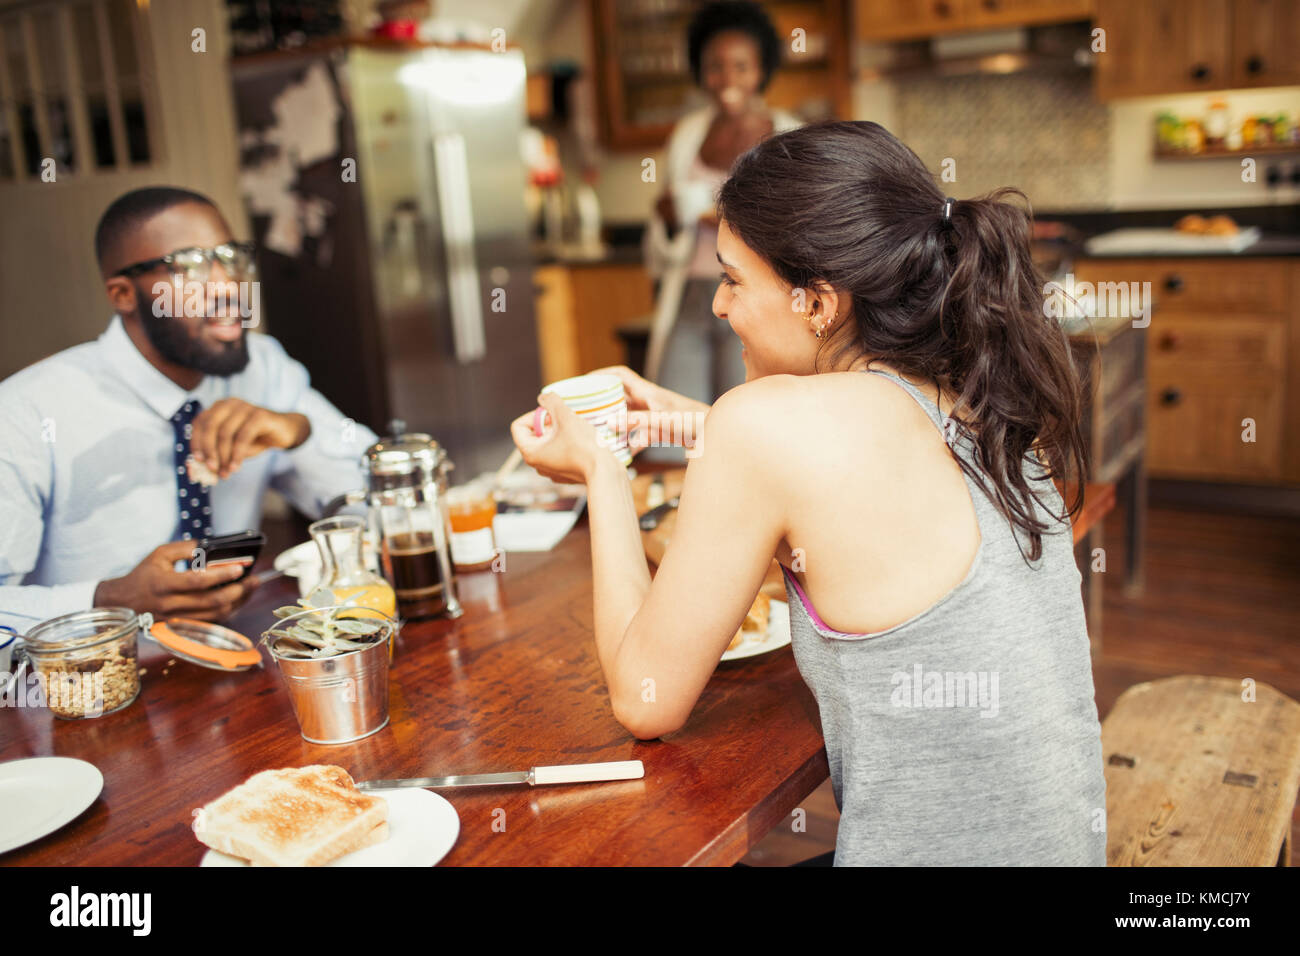 Ein Paar trinkt Kaffee und isst Frühstück am Tisch Stockfoto